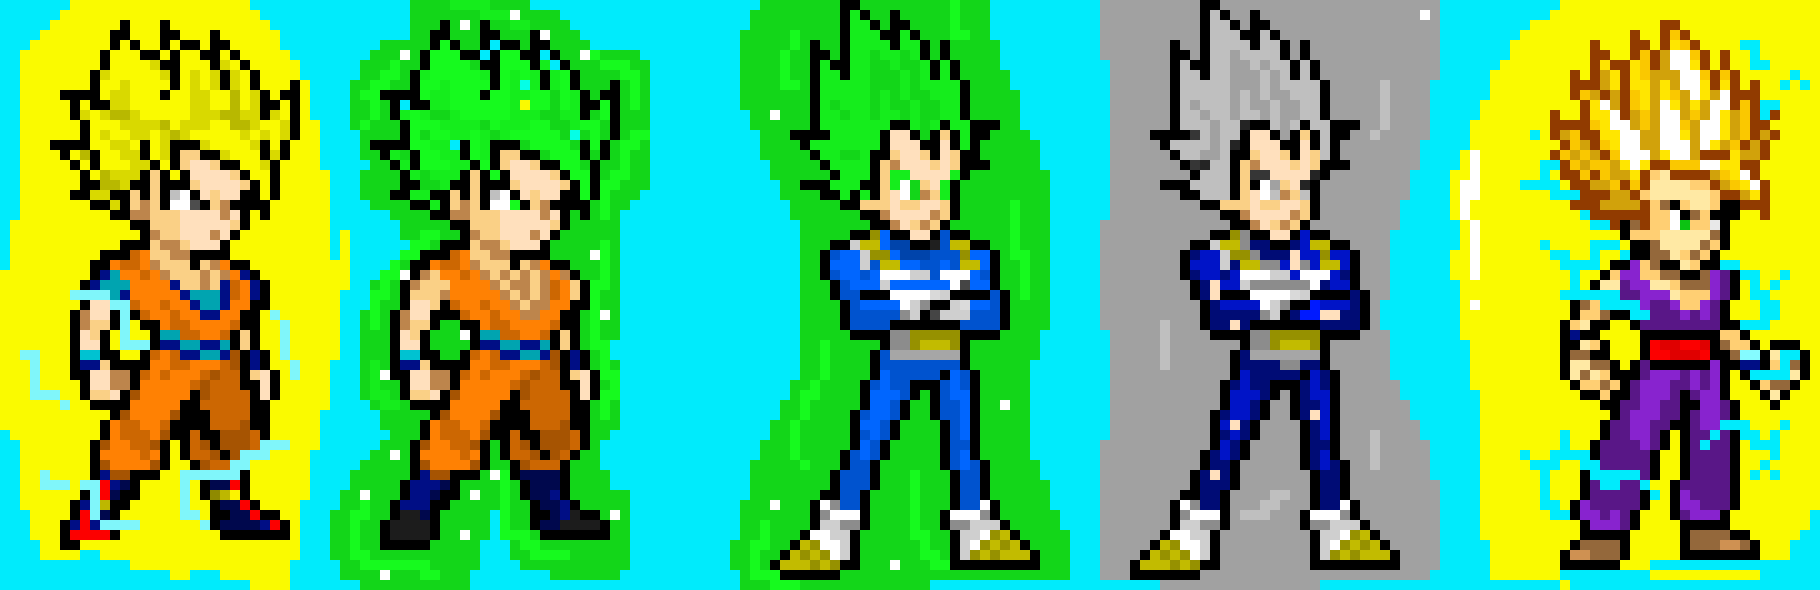 Super Saiyan Green Goku And Vegeta And Super Saiyan 1 And 2